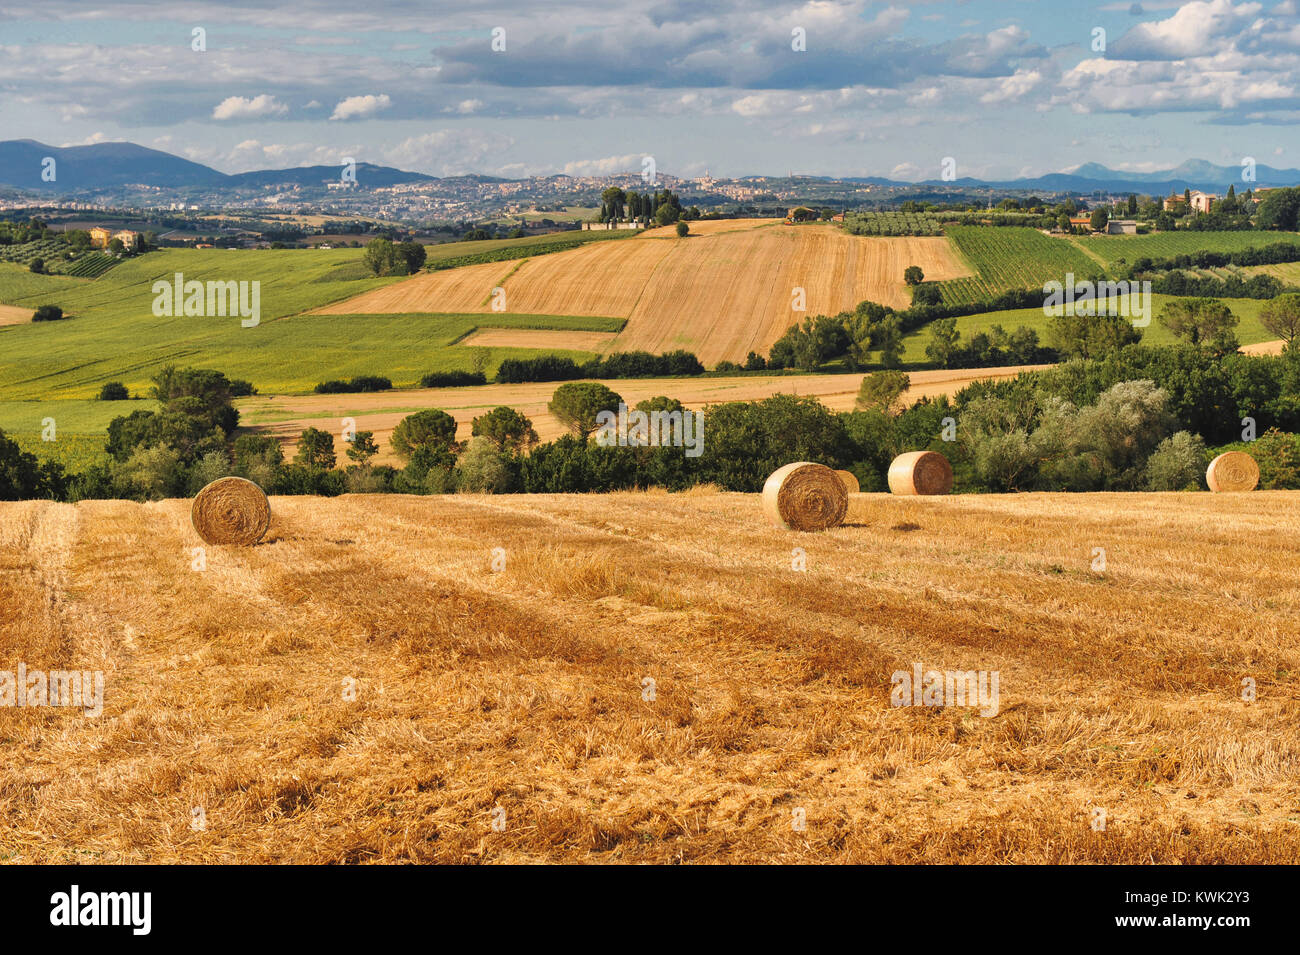 Perugia, Umbrien, Italien. Umbrien das grüne Herz Italiens. Typische Landschaft mit den warmen Farben des Sommers und den Riemenscheiben der frisch geernteten Weizen. Stockfoto